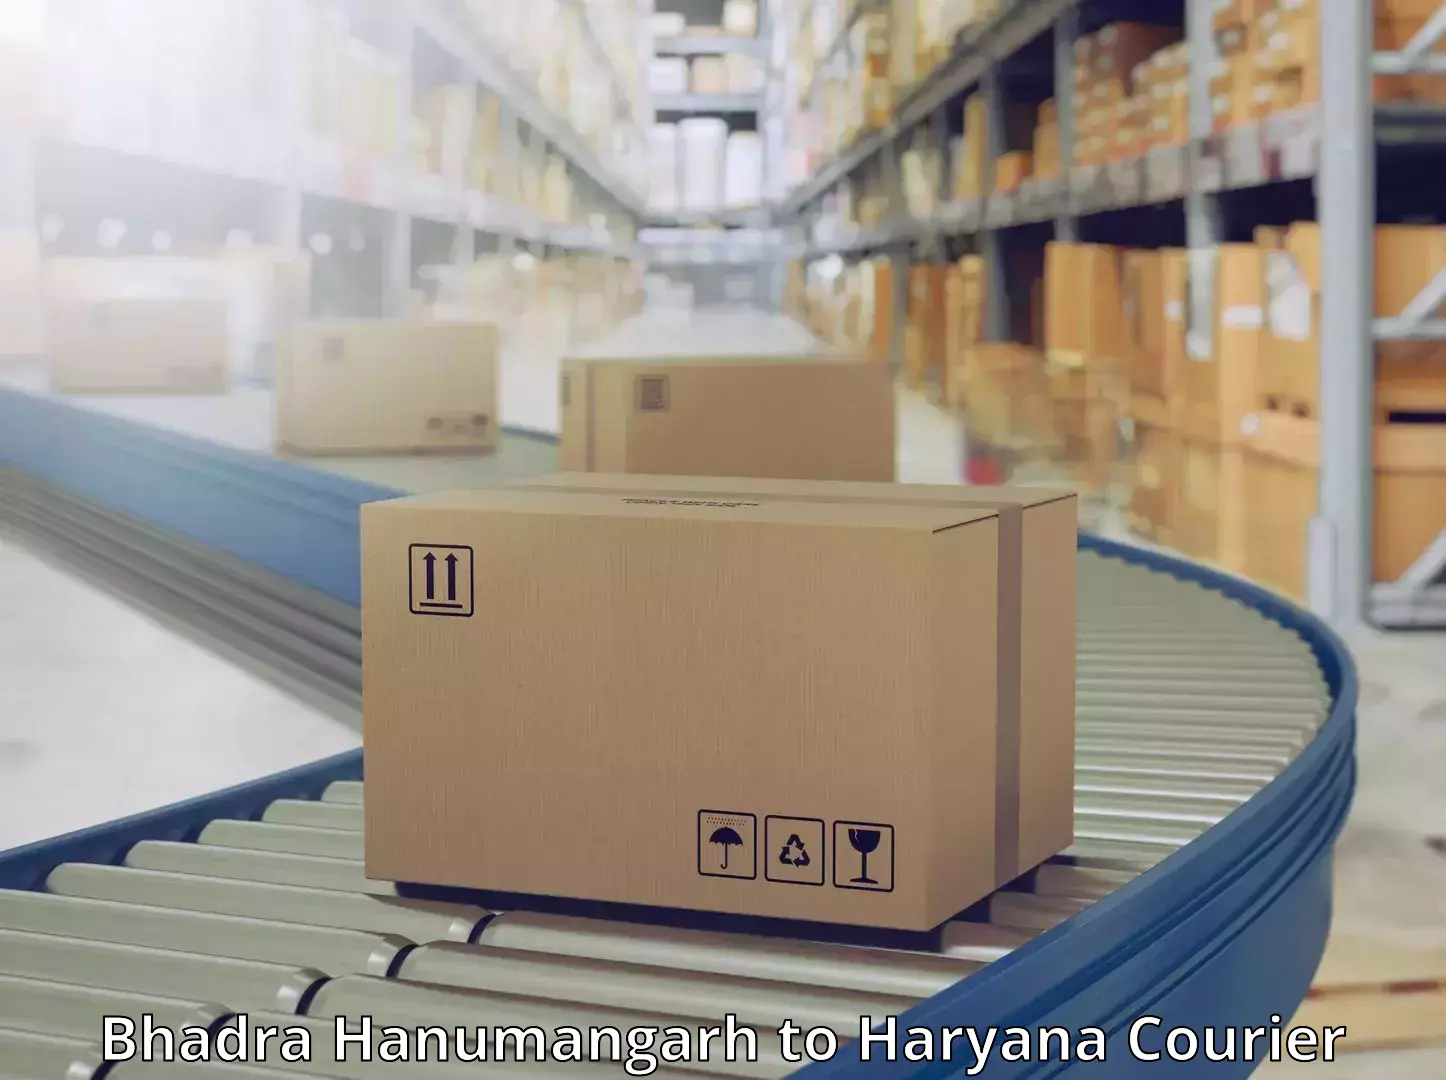 Premium courier solutions Bhadra Hanumangarh to Haryana